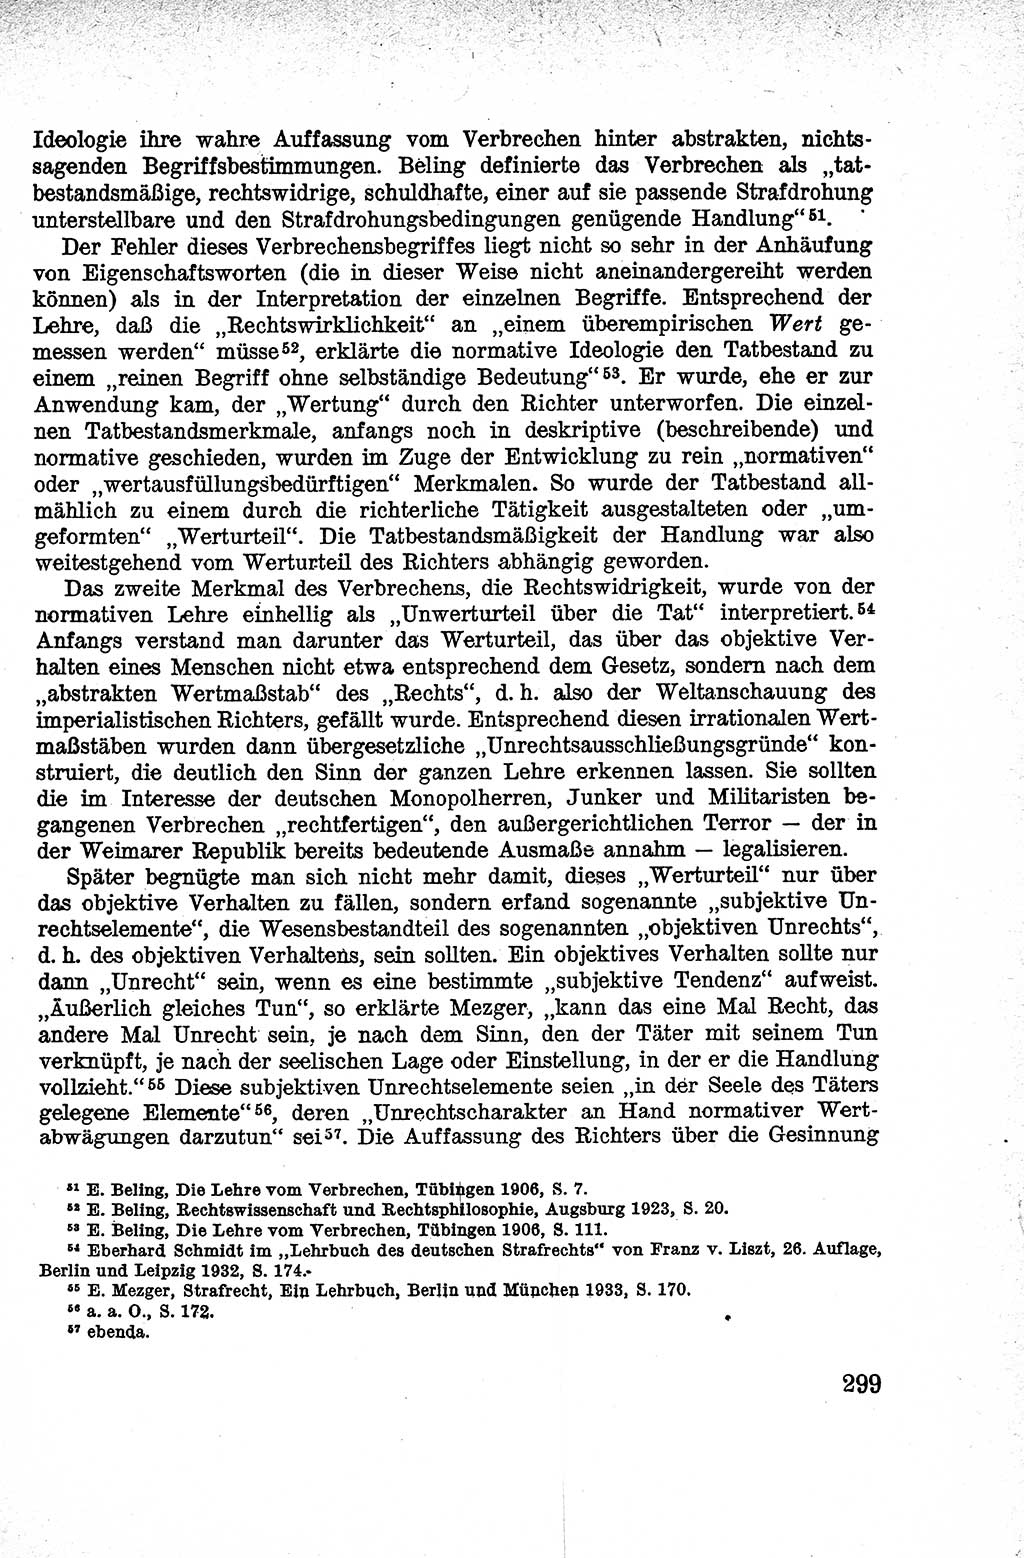 Lehrbuch des Strafrechts der Deutschen Demokratischen Republik (DDR), Allgemeiner Teil 1959, Seite 299 (Lb. Strafr. DDR AT 1959, S. 299)